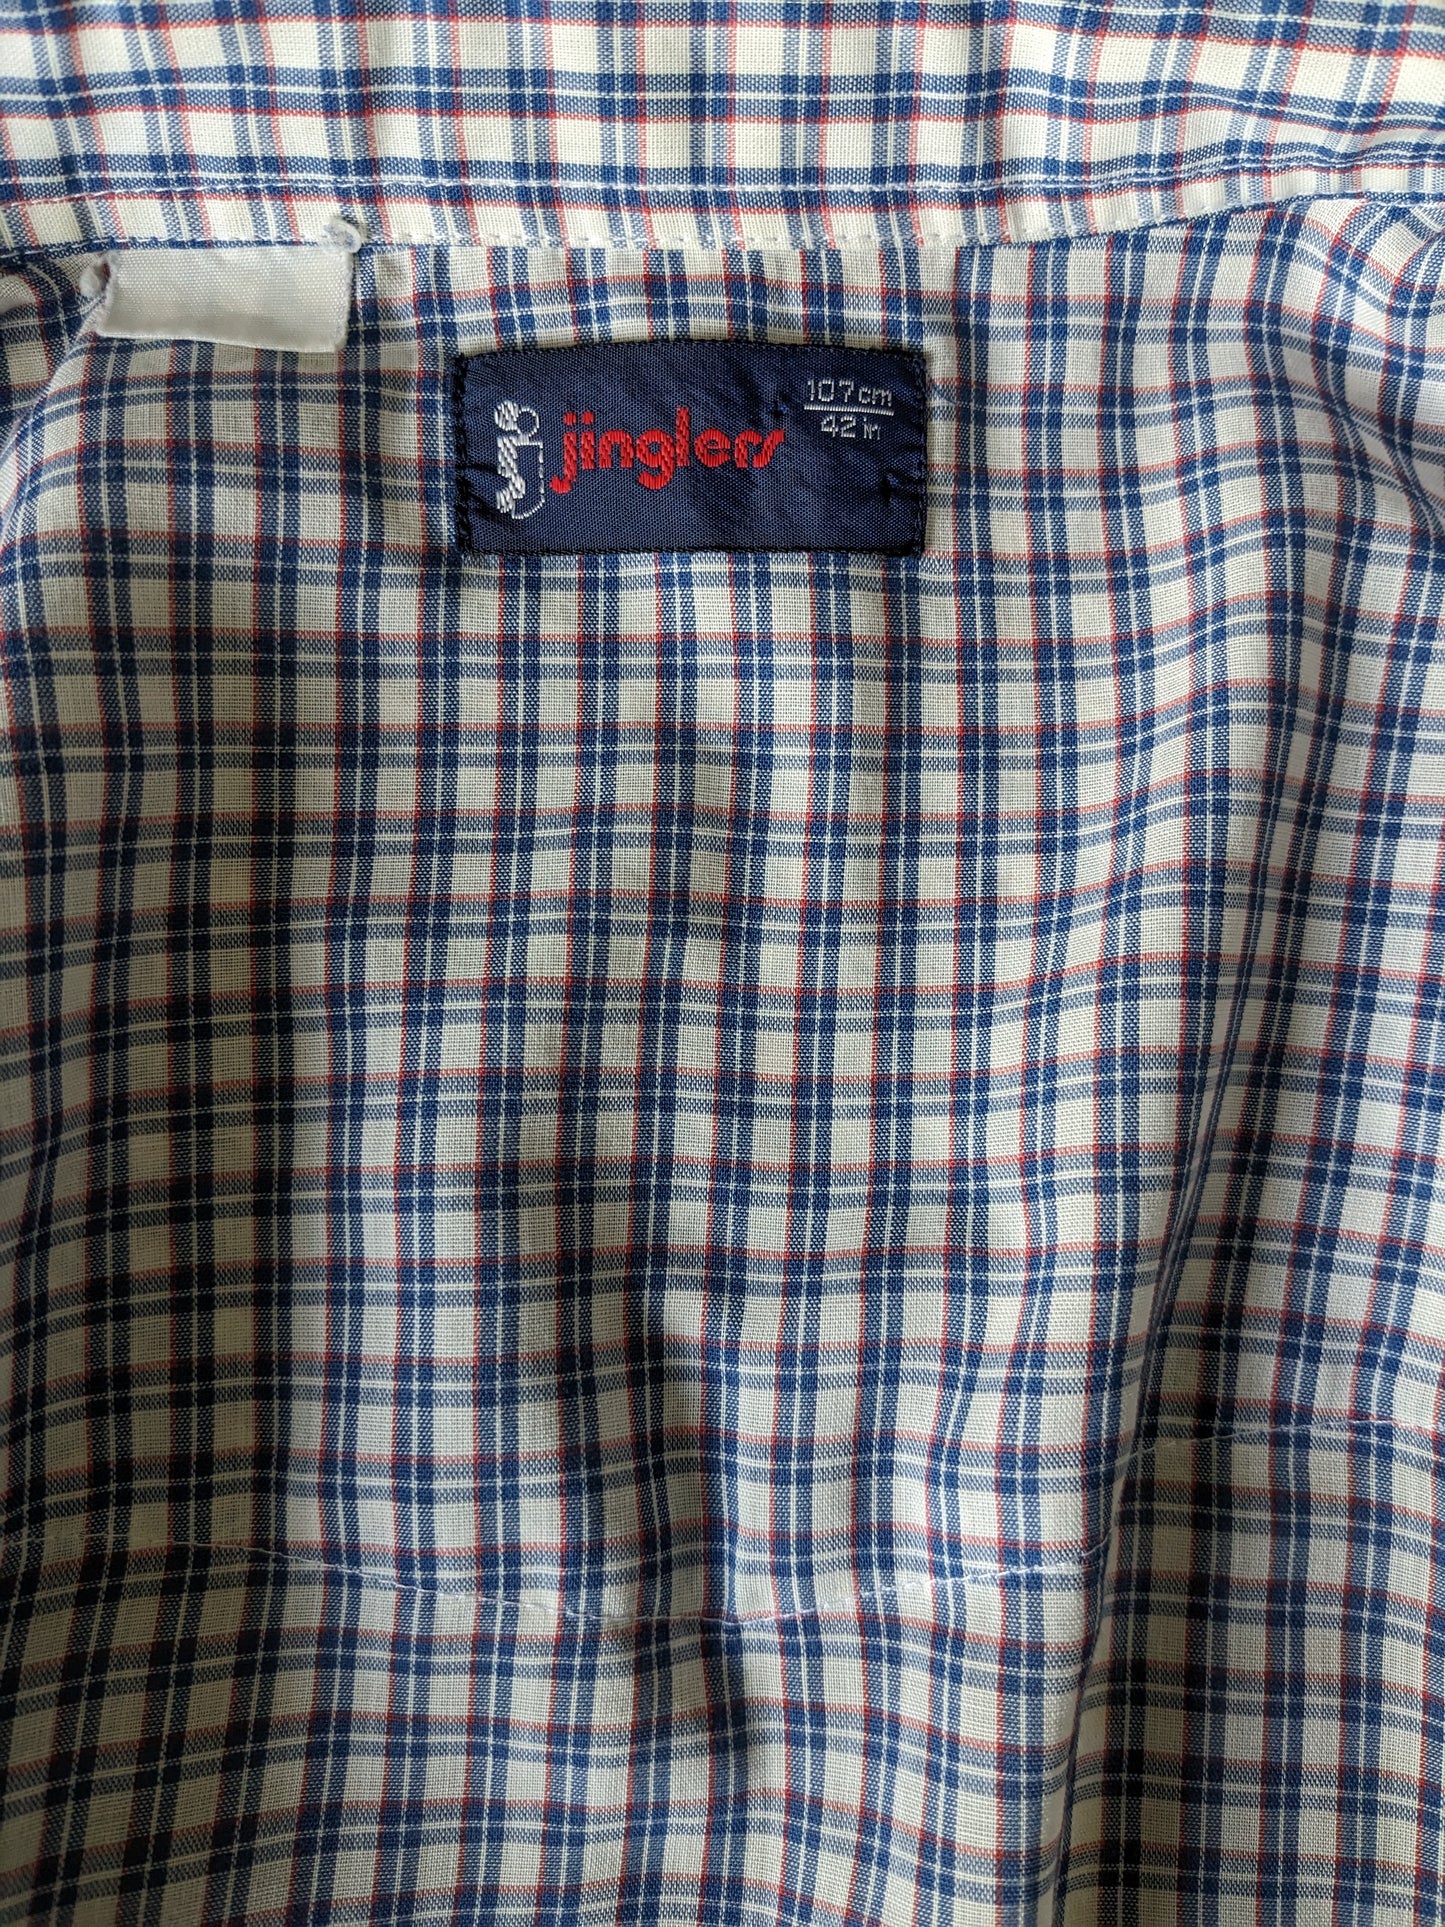 Vintage Jingles -Shirt Kurzarm und Schnappschüsse. Blau weiß rote überprüft. Größe L.